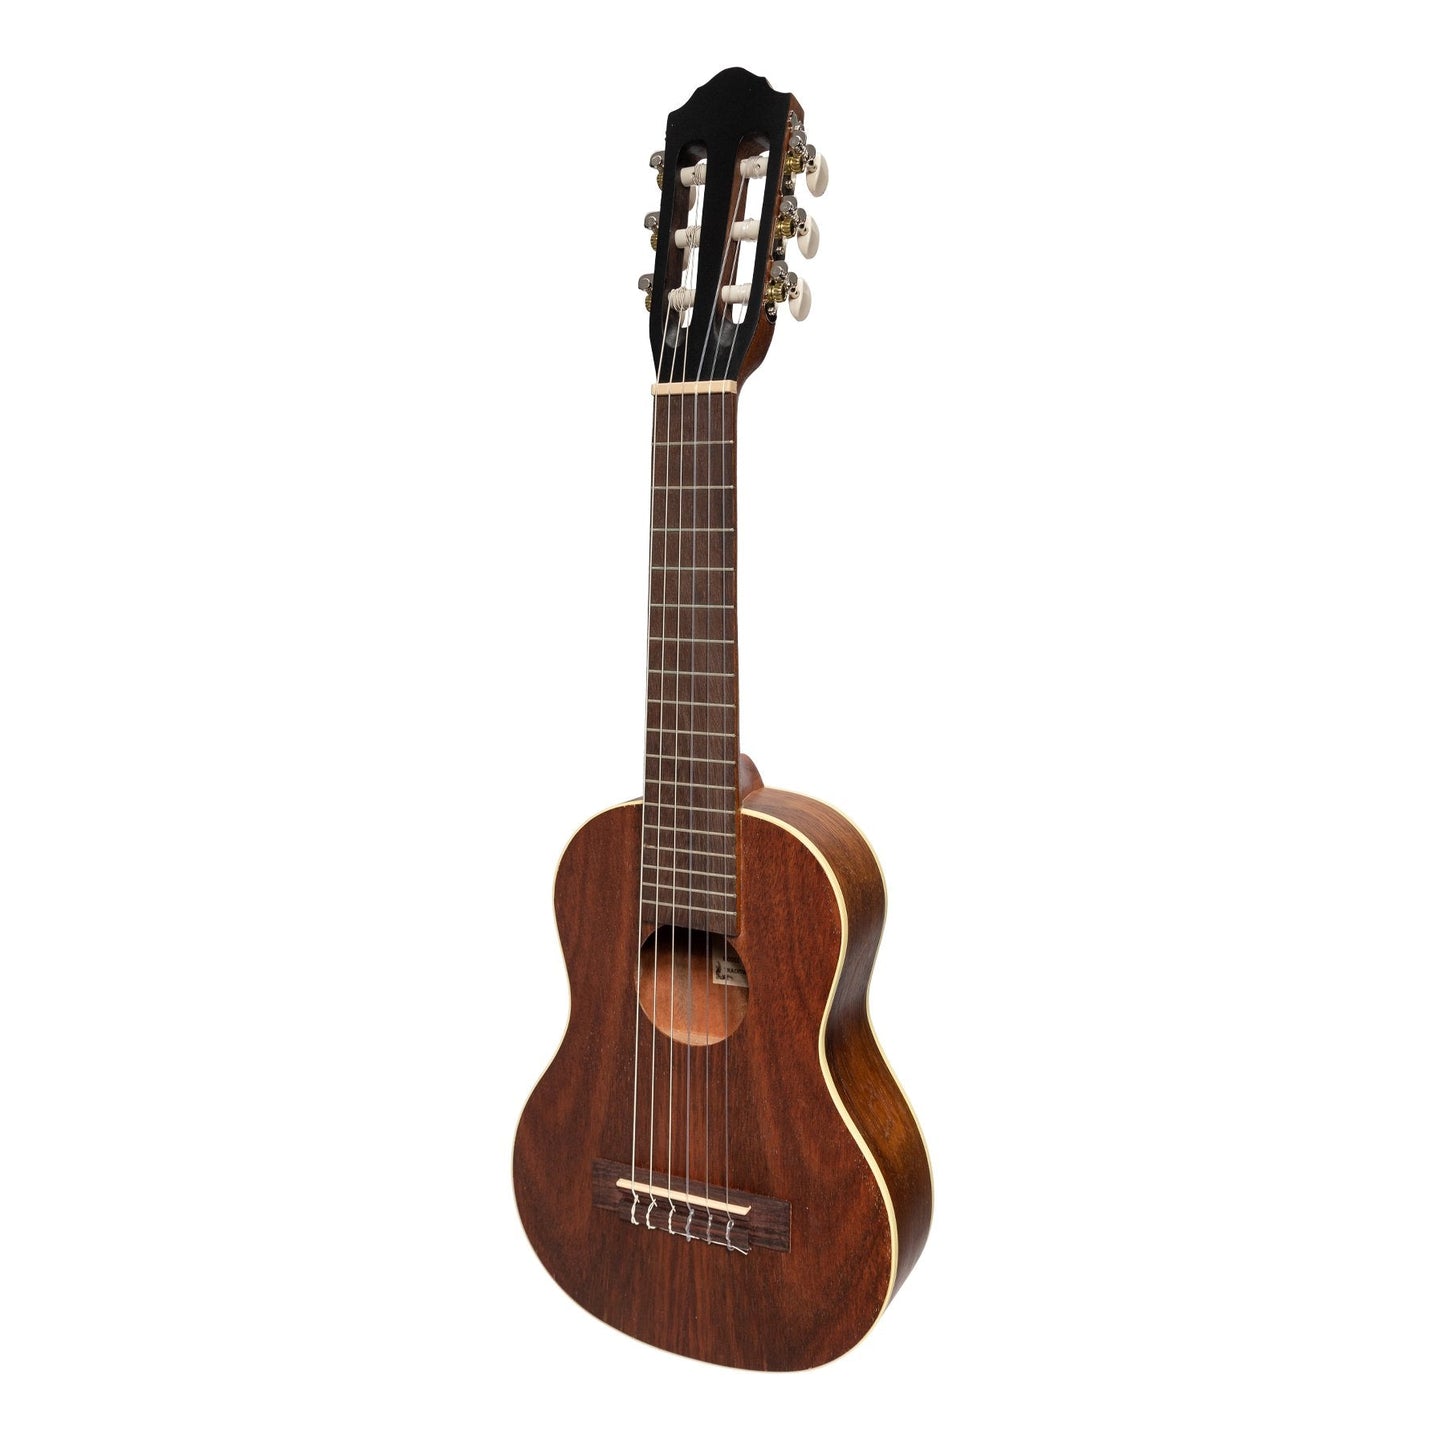 Mojo 'Guitarulele' 1/4 Size Classical Guitar (Rosewood)